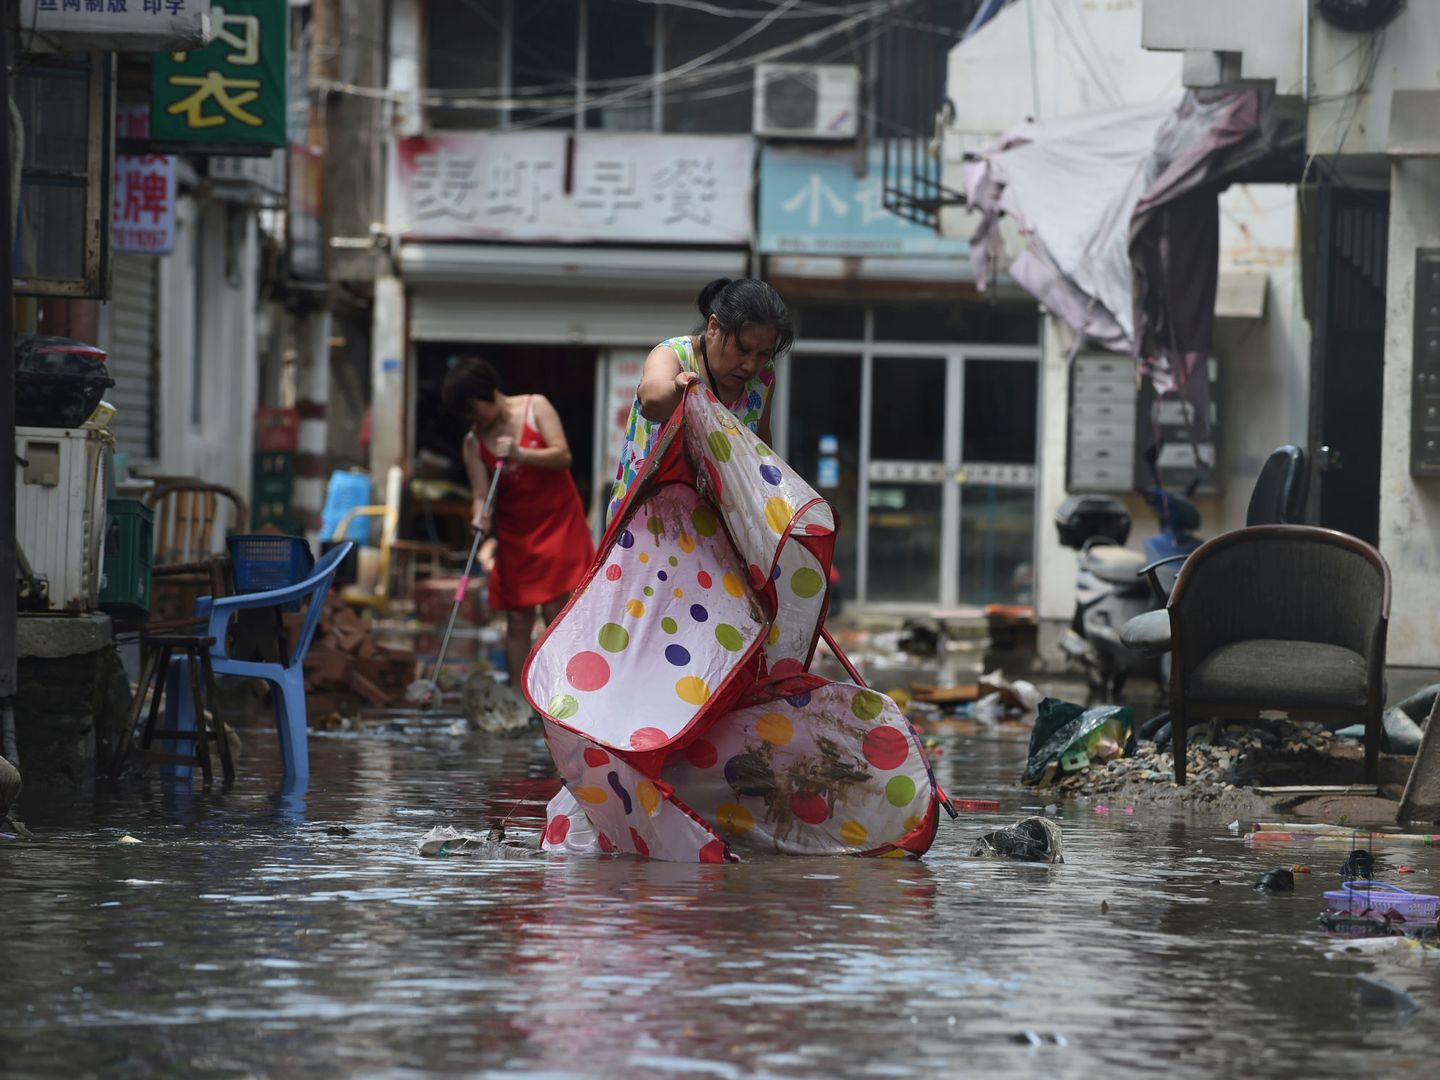 Los ciudadanos achican agua de las calles inundadas por el tifón. (Reuters)